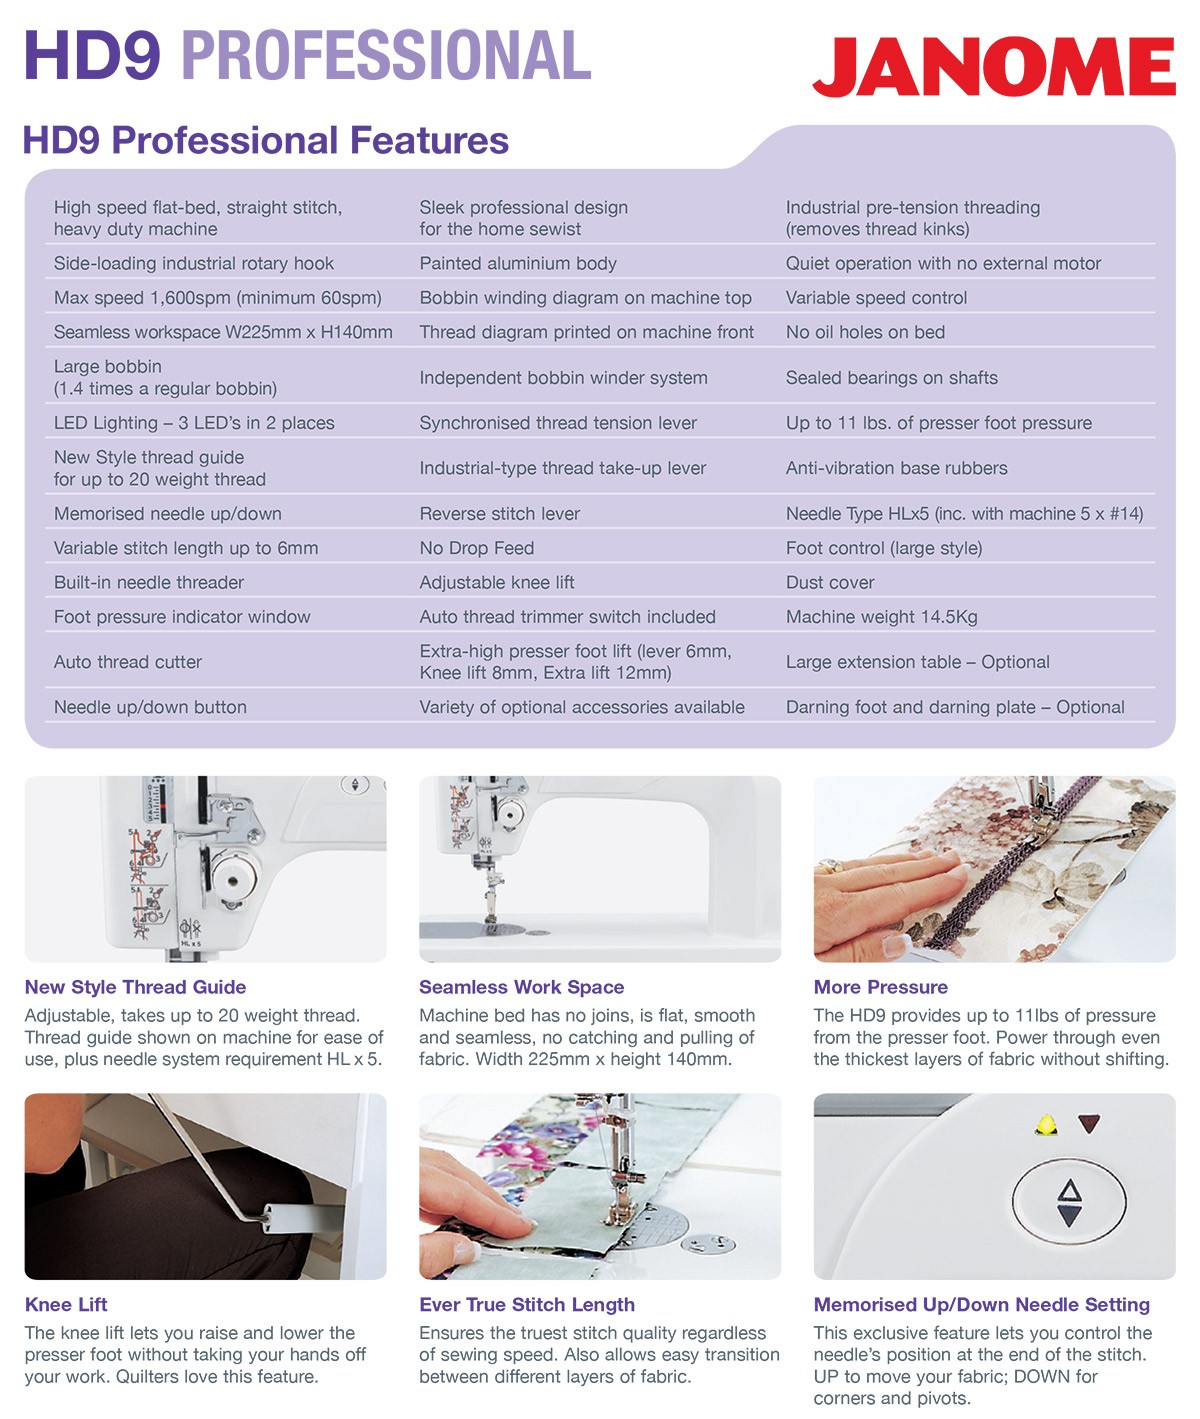 HD9 Professional